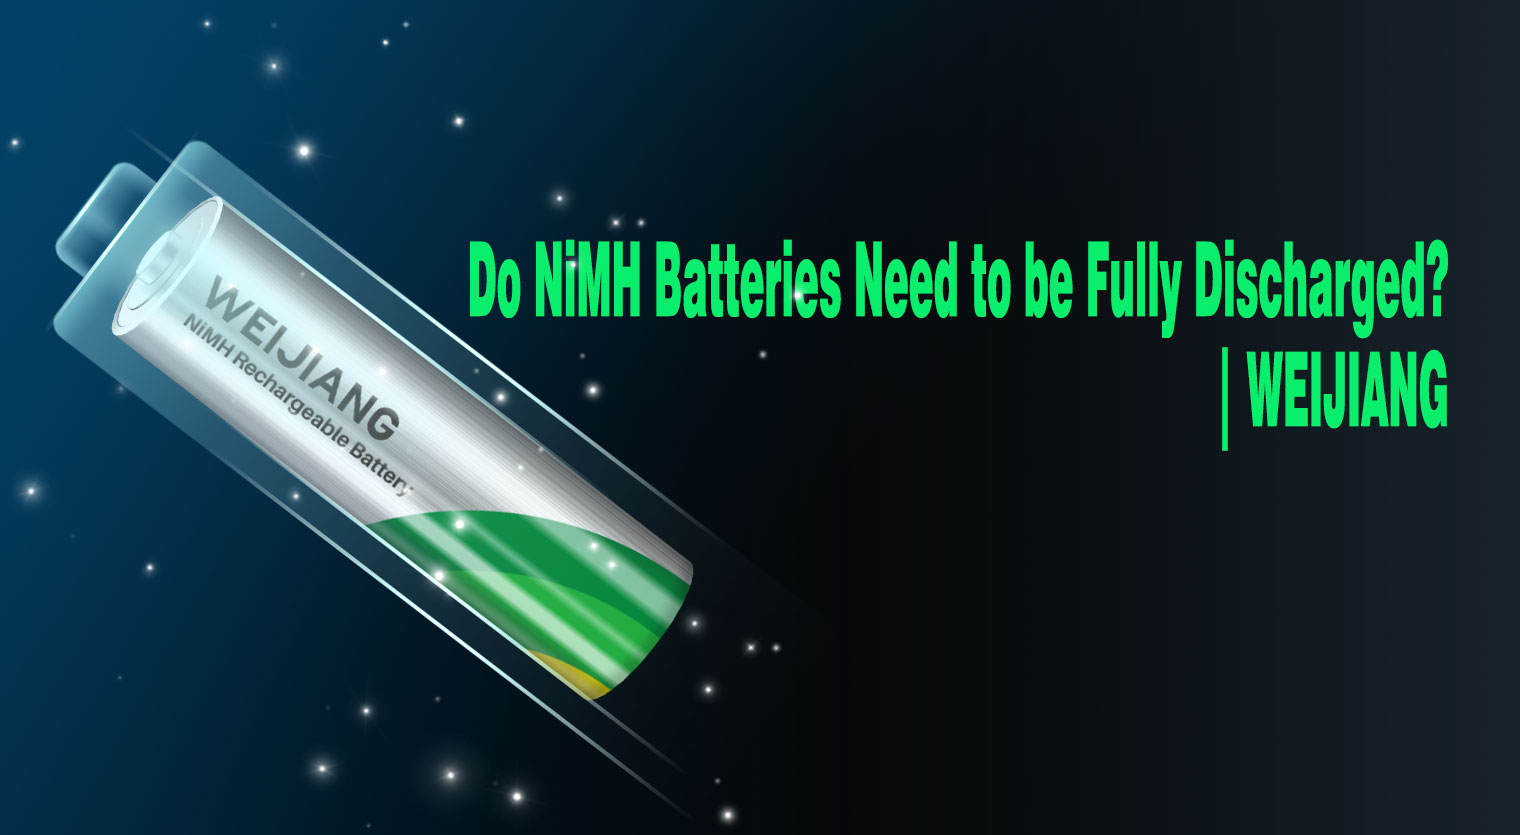 Do-NiMH-batterijen moeten volledig worden ontladen